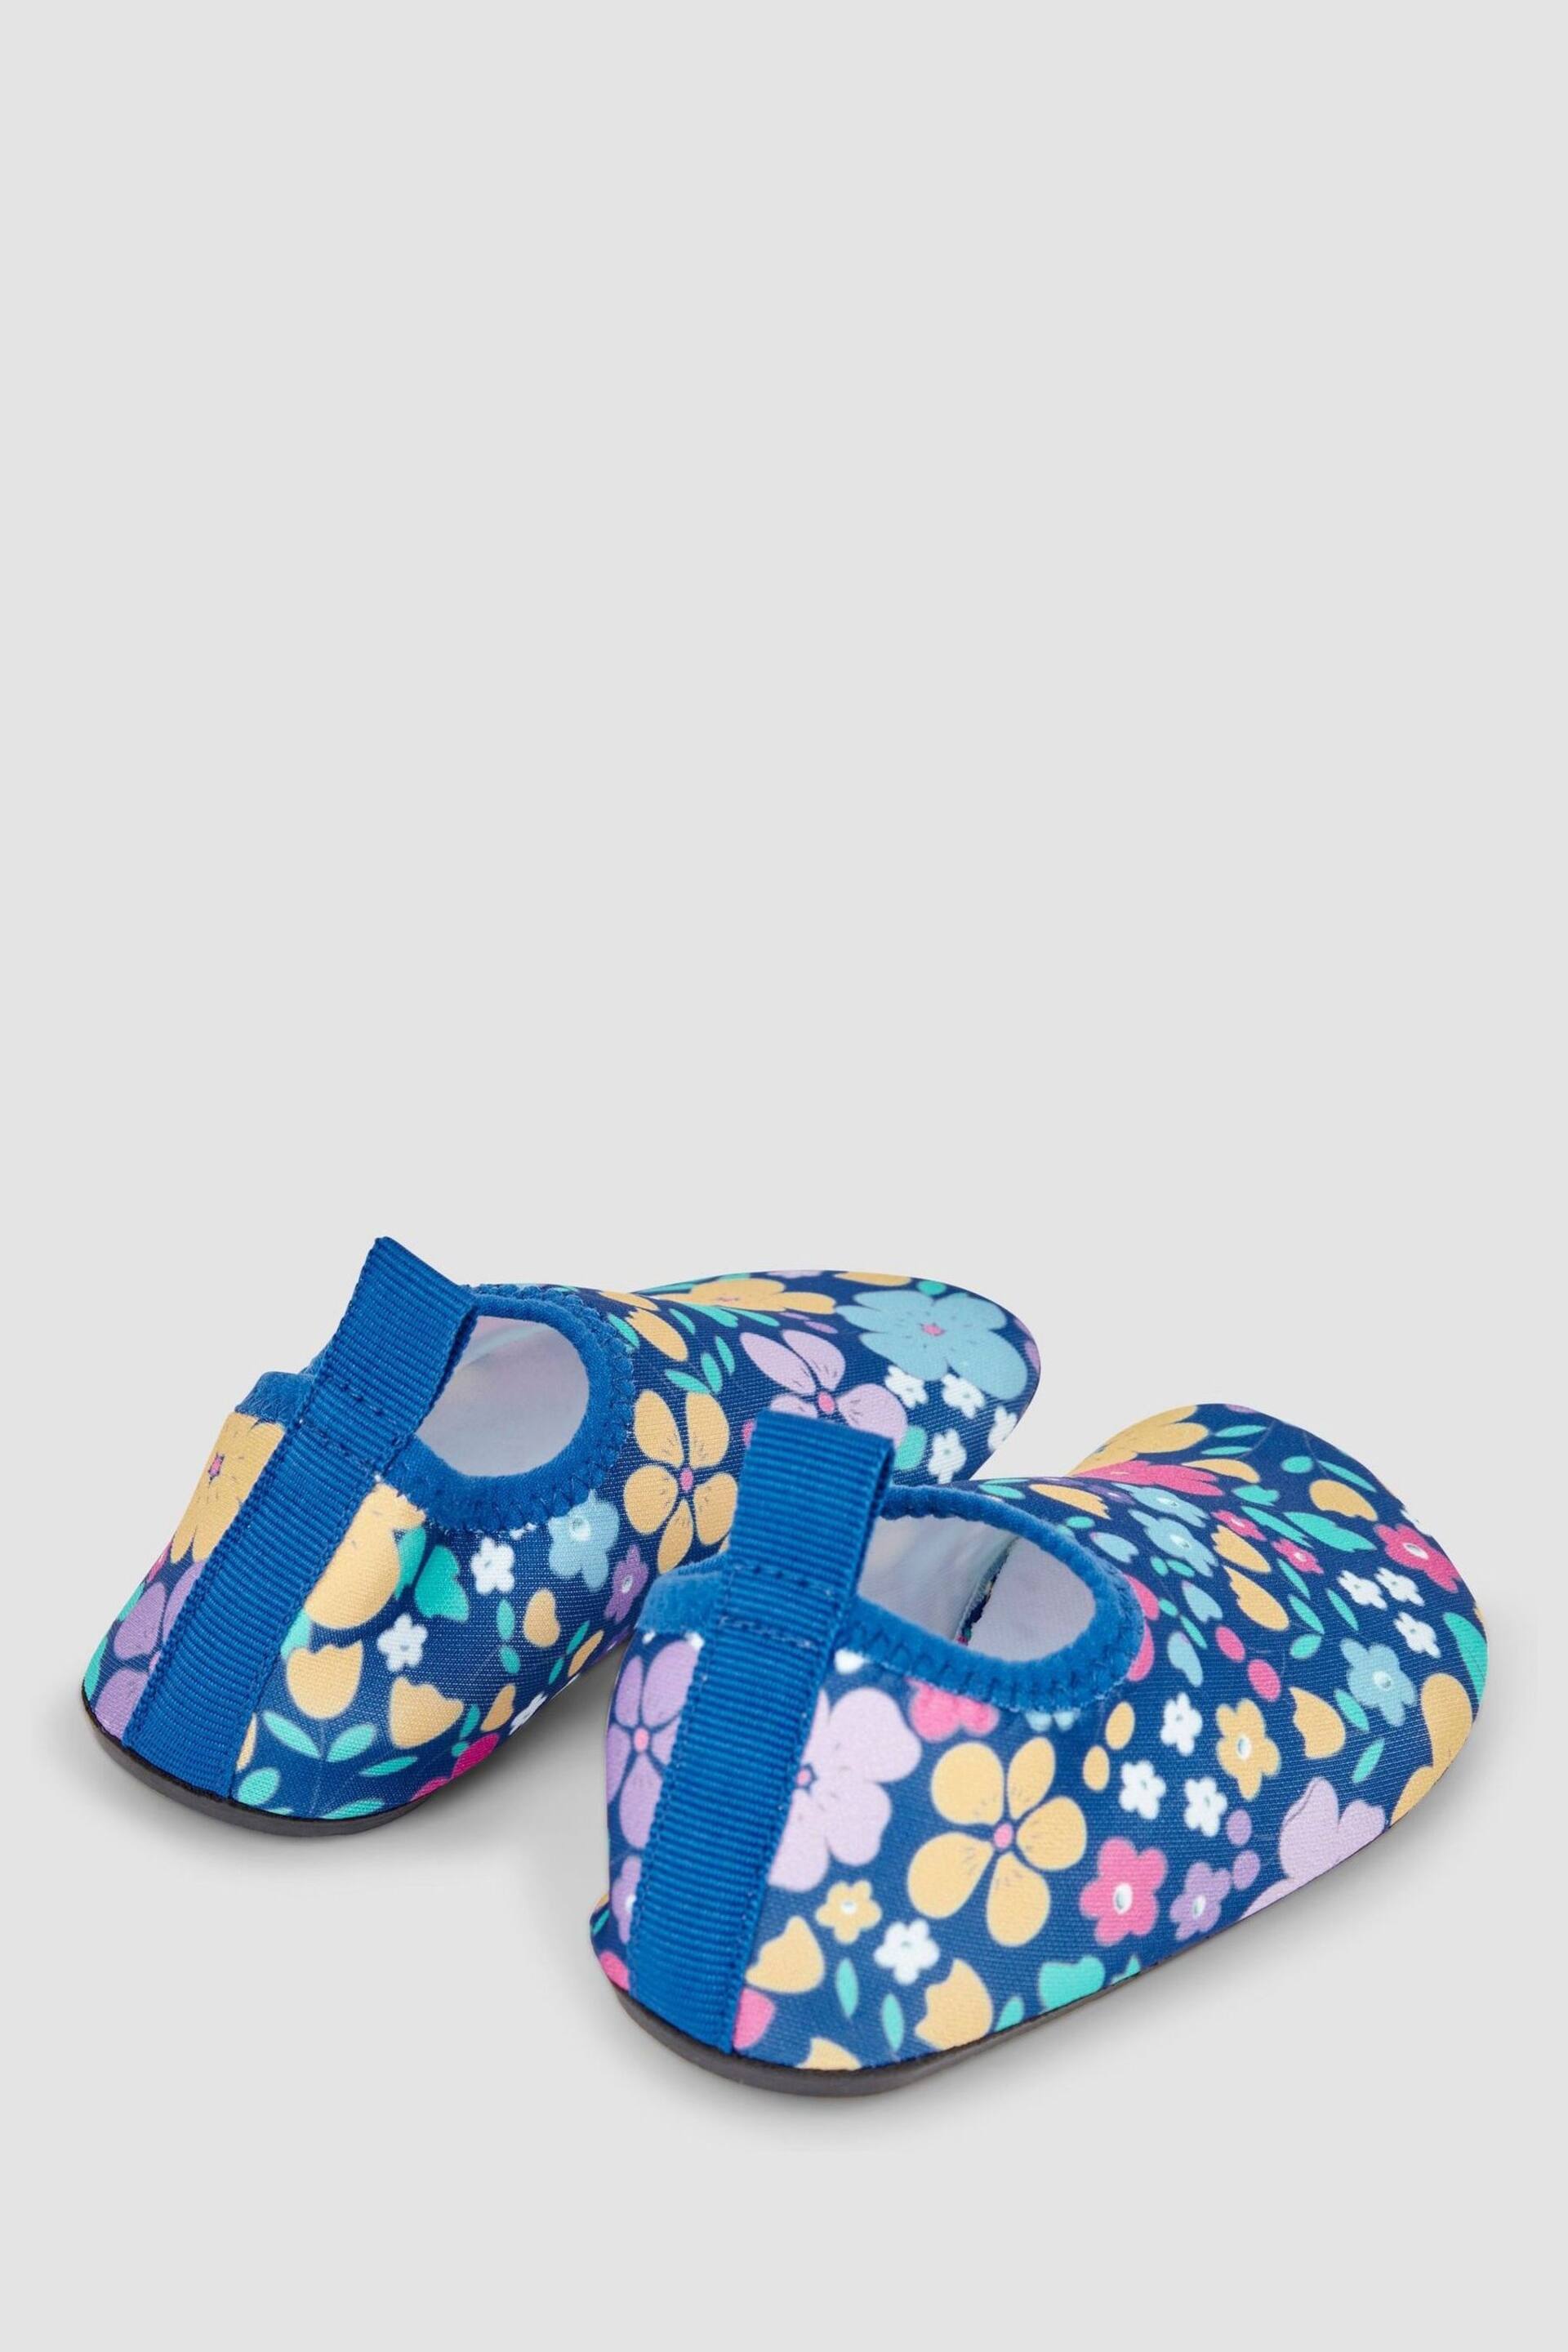 JoJo Maman Bébé Blue Floral Anti-Slip Swim Shoes - Image 2 of 4